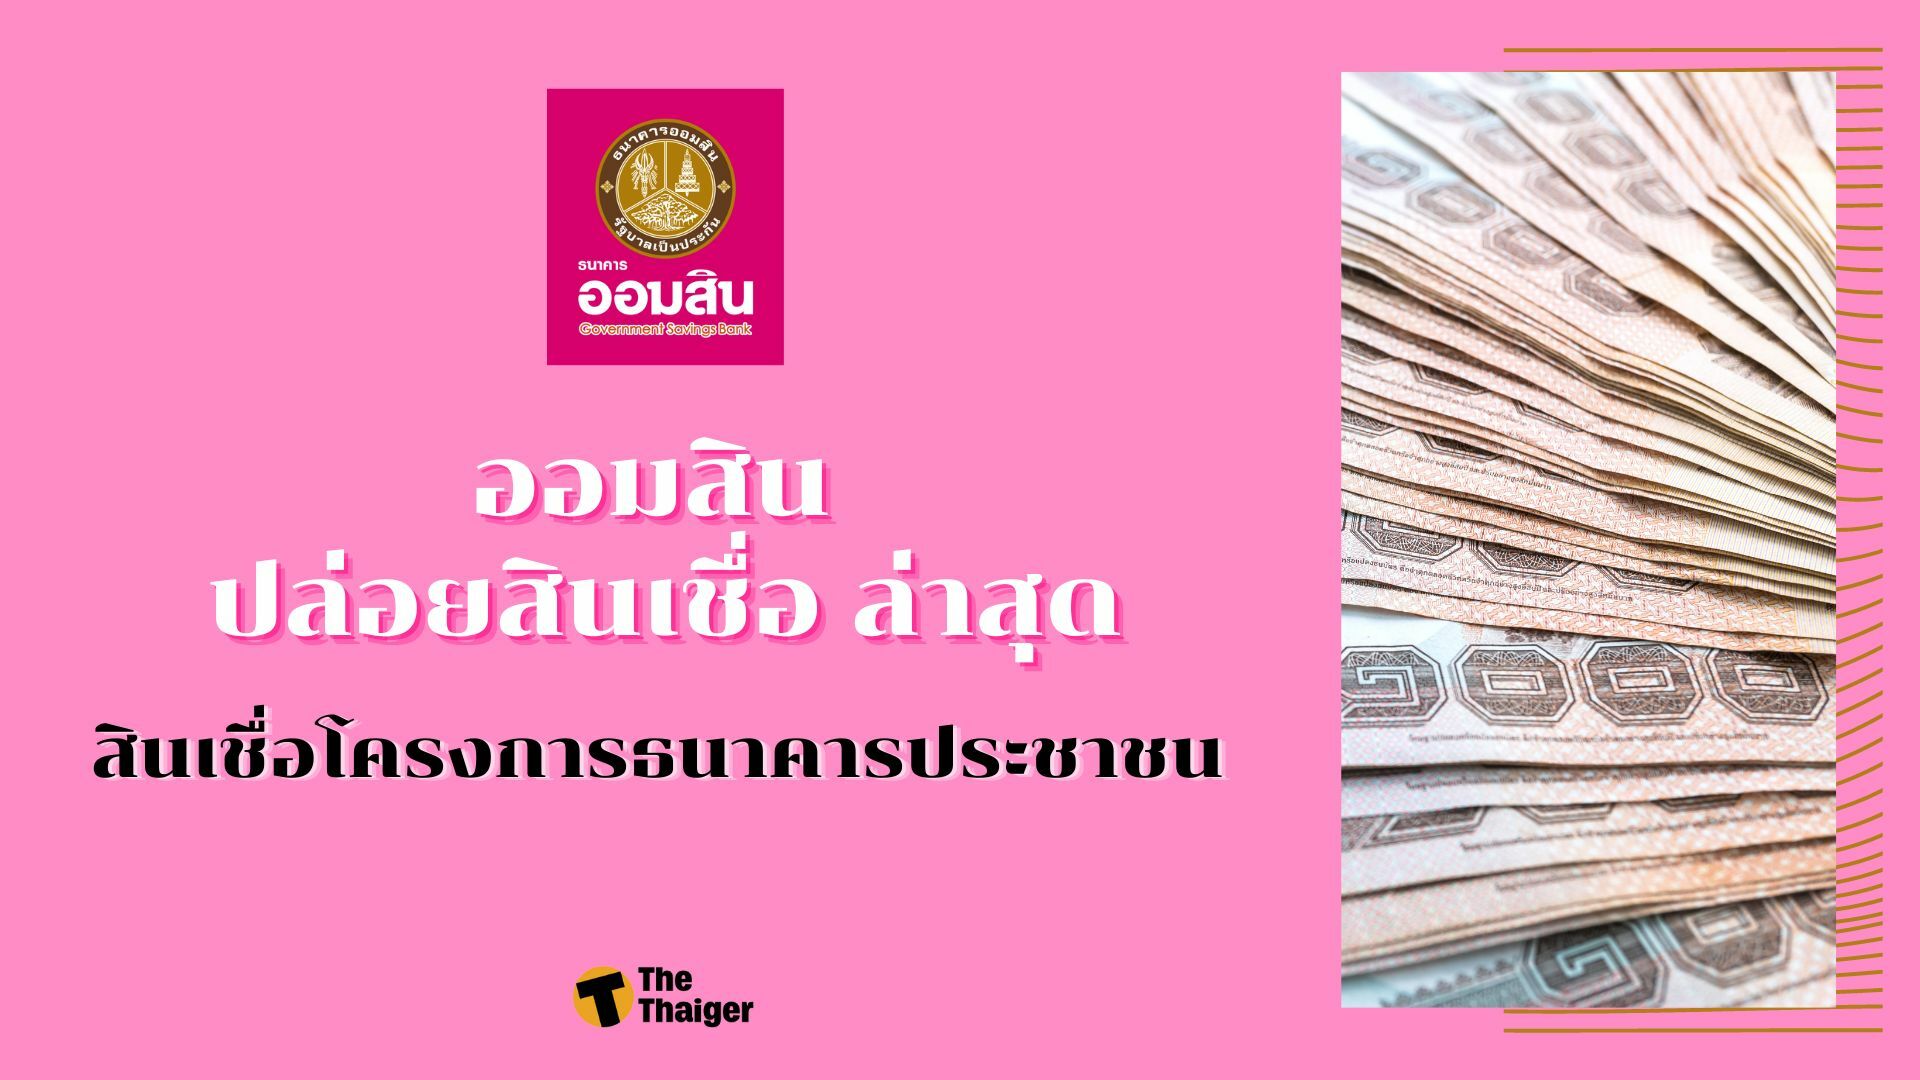 ออมสิน ปล่อยสินเชื่อ ล่าสุด ปี 65 สินเชื่อโครงการธนาคารประชาชน ช่วยคนไทยให้มีเงินหมุนเวียน